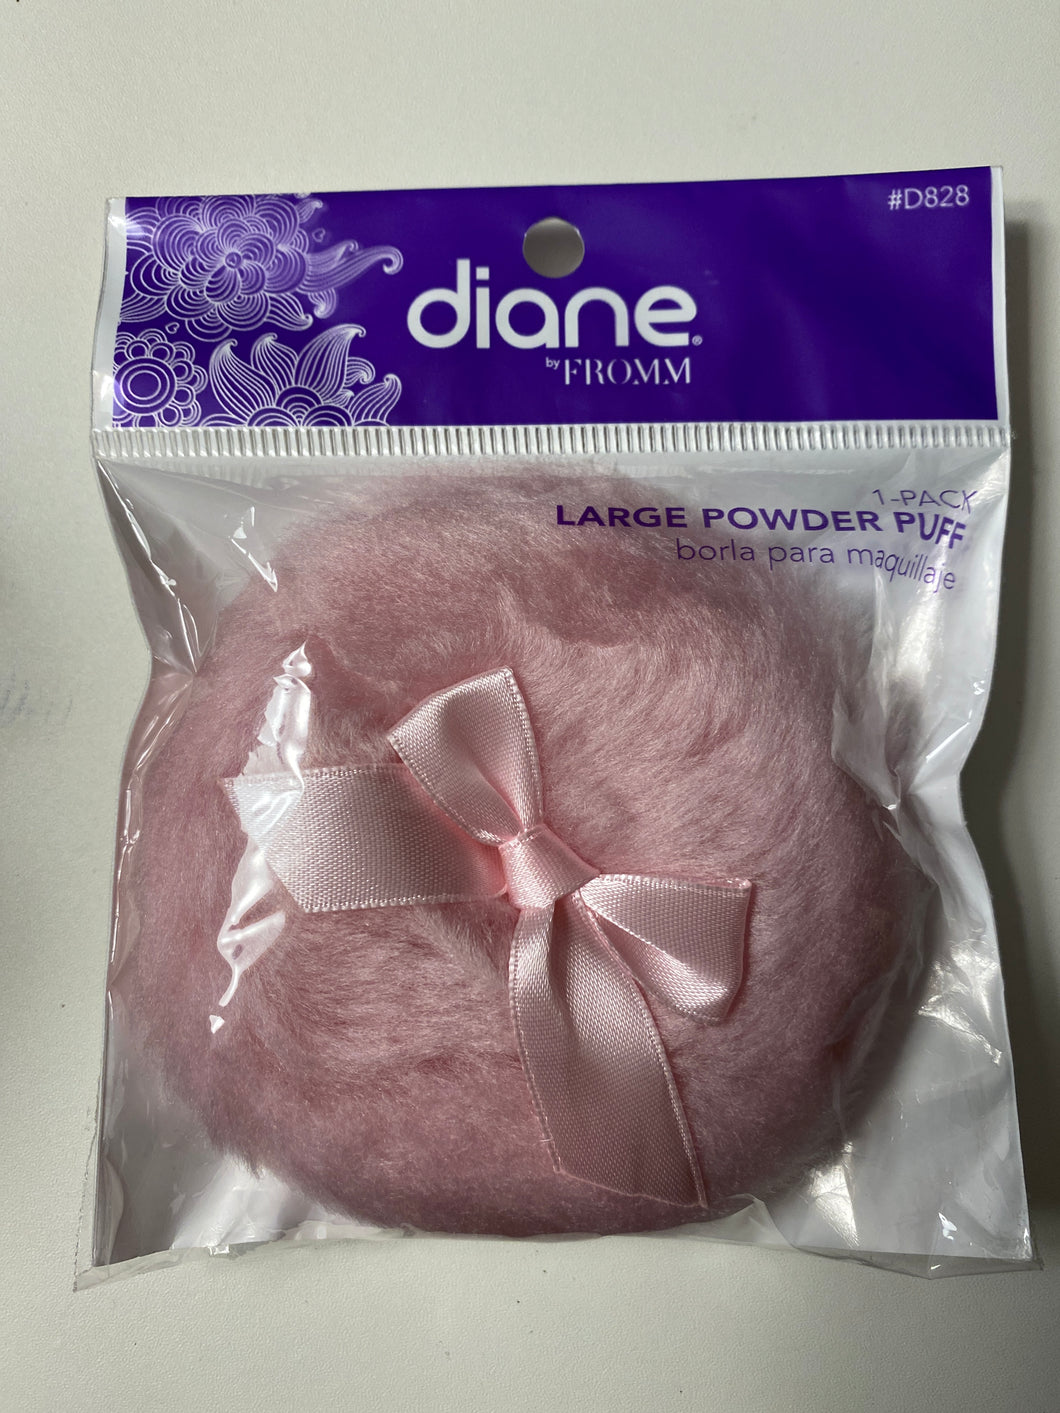 Diane Large Powder Puff 1 pack - pink